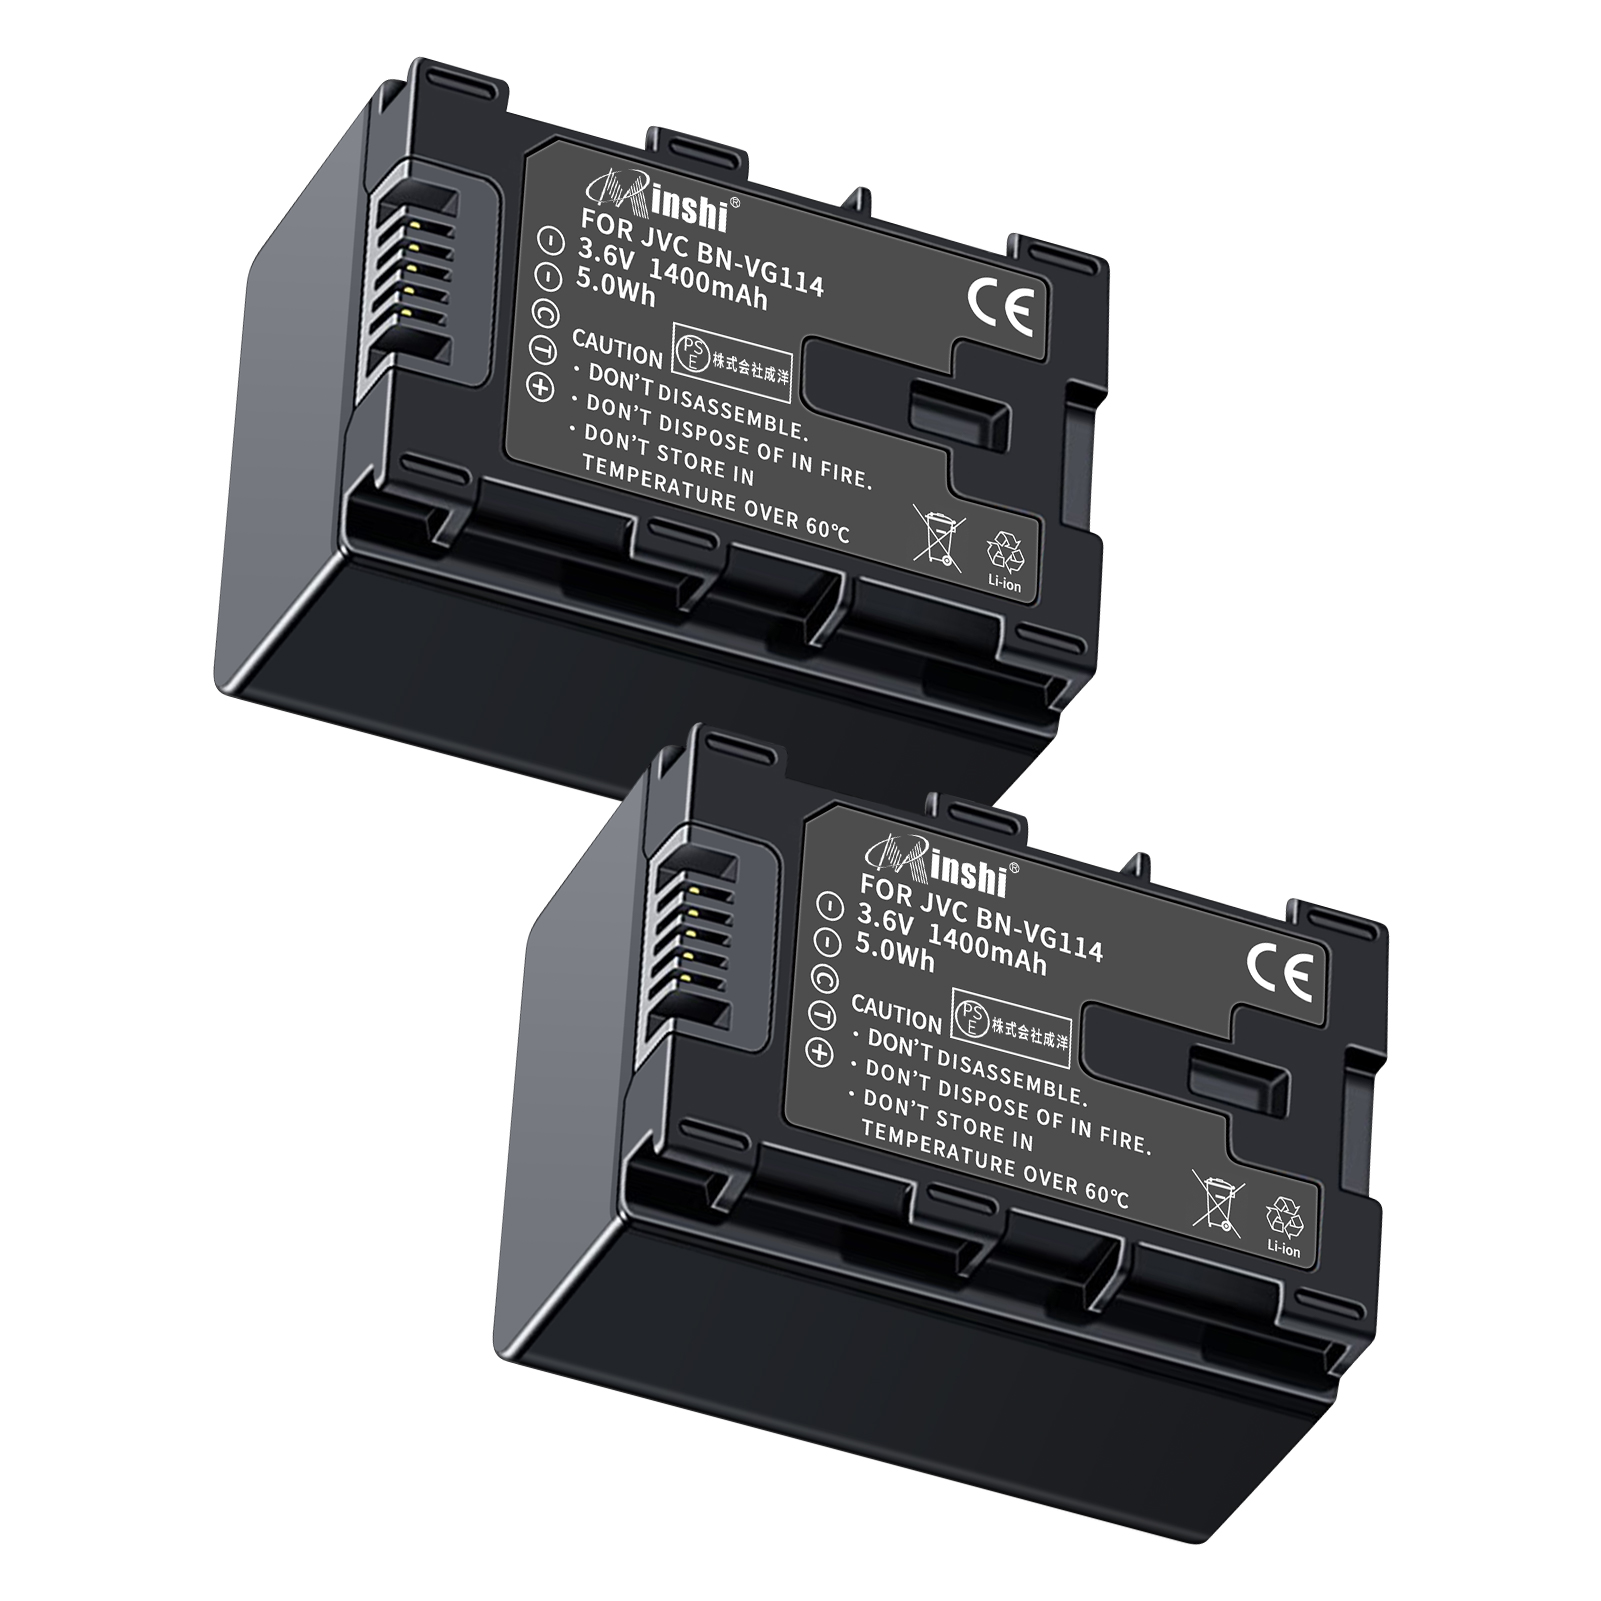 【２個セット】 minshi VICTOR GZ-HM350 BN-VG121 対応 互換バッテリー 1400mAh 高品質交換用バッテリー